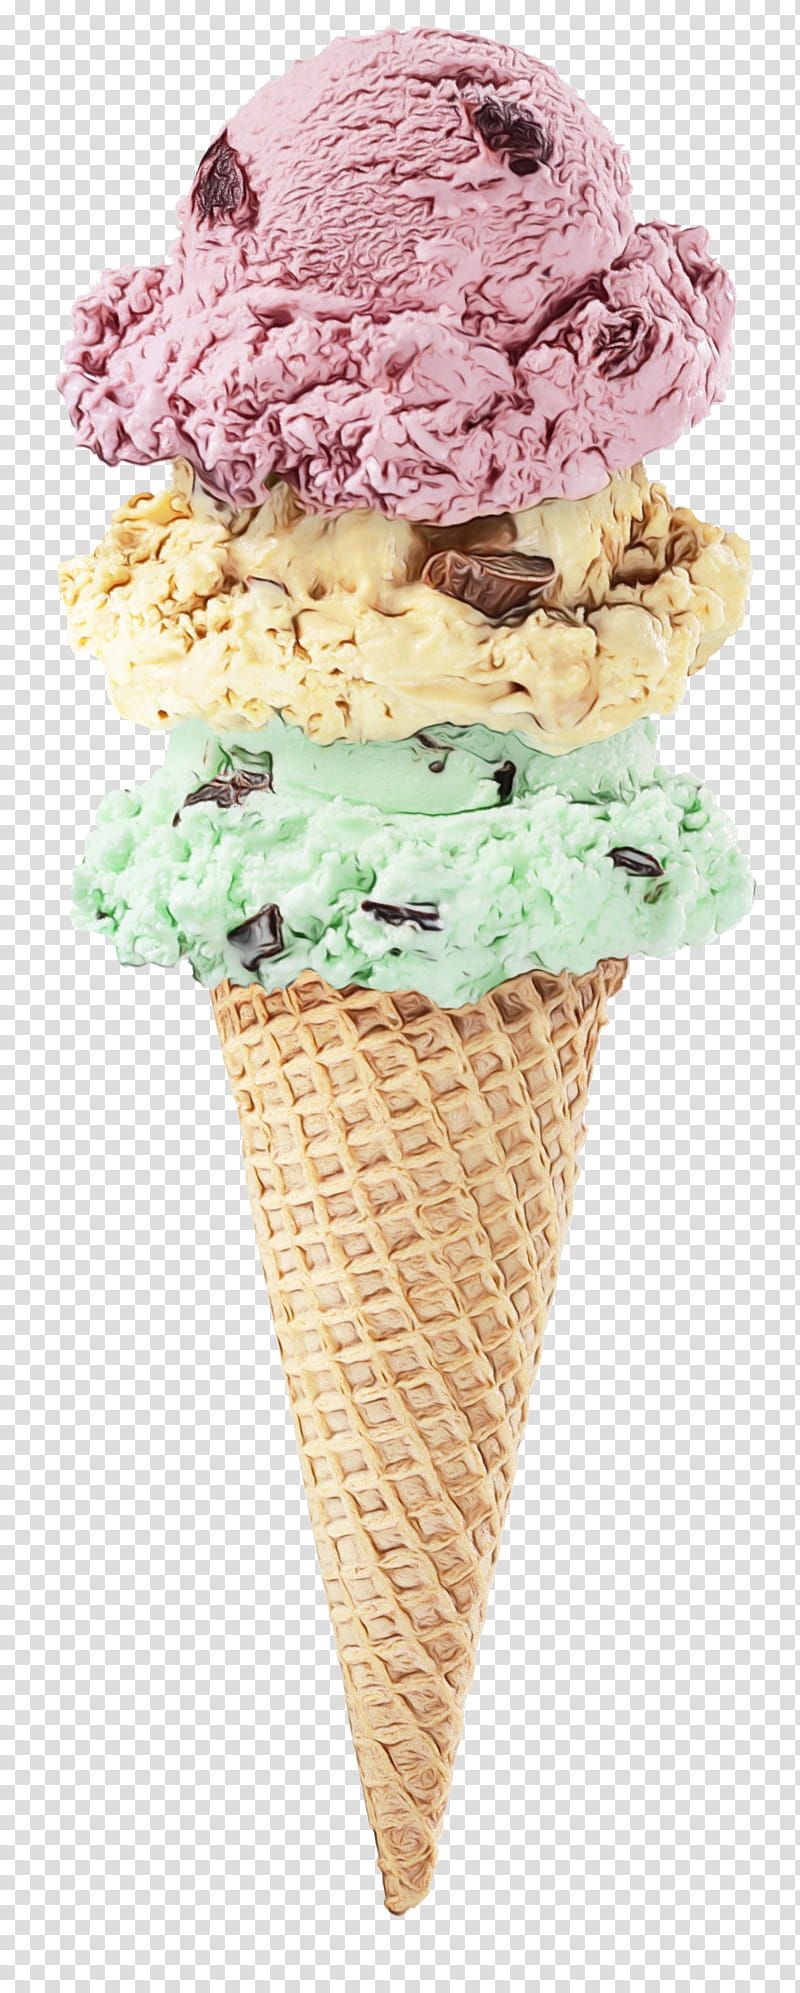 Ice Cream Cone, Ice Cream Cones, Sundae, Neapolitan Ice Cream, Ice Pops, Ice Cream Parlor, Chocolate Ice Cream, Sorbet transparent background PNG clipart